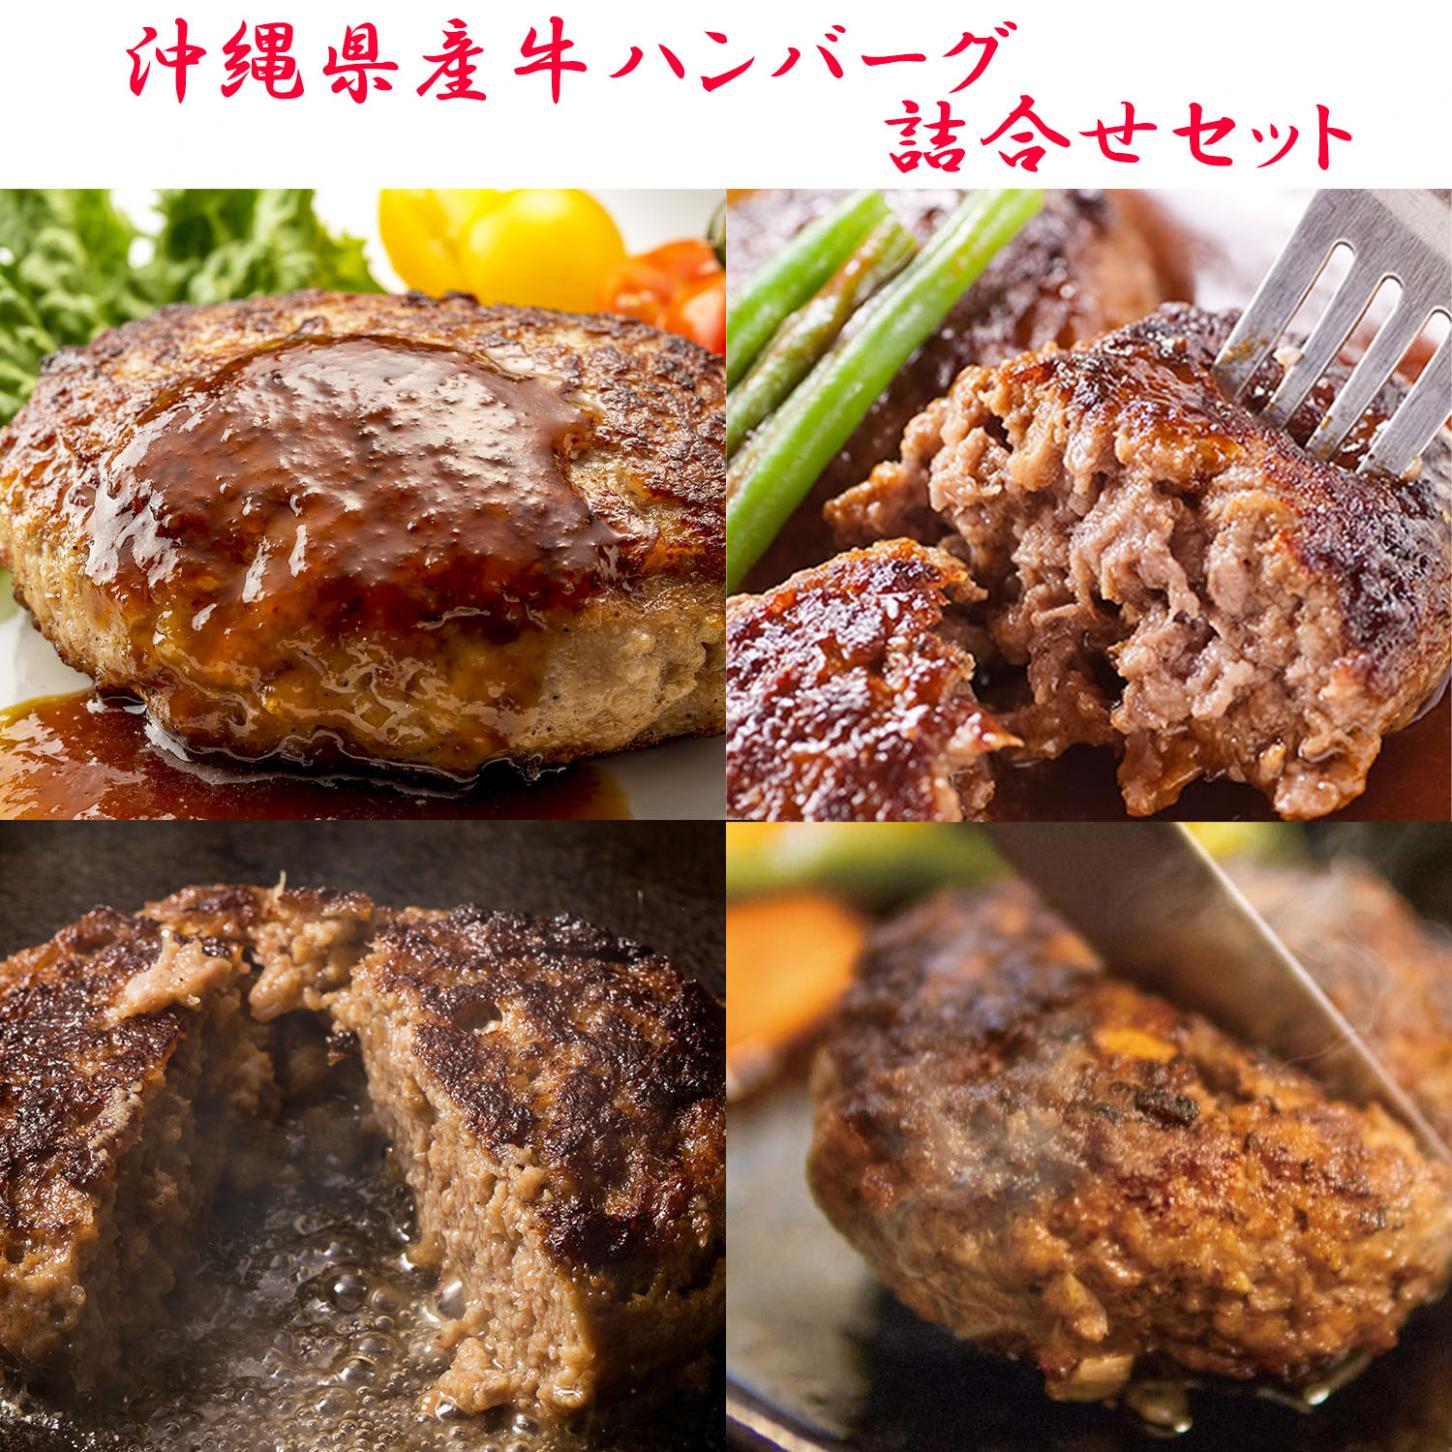 沖縄県産牛ハンバーグ詰合せセット(8個入・送料込)